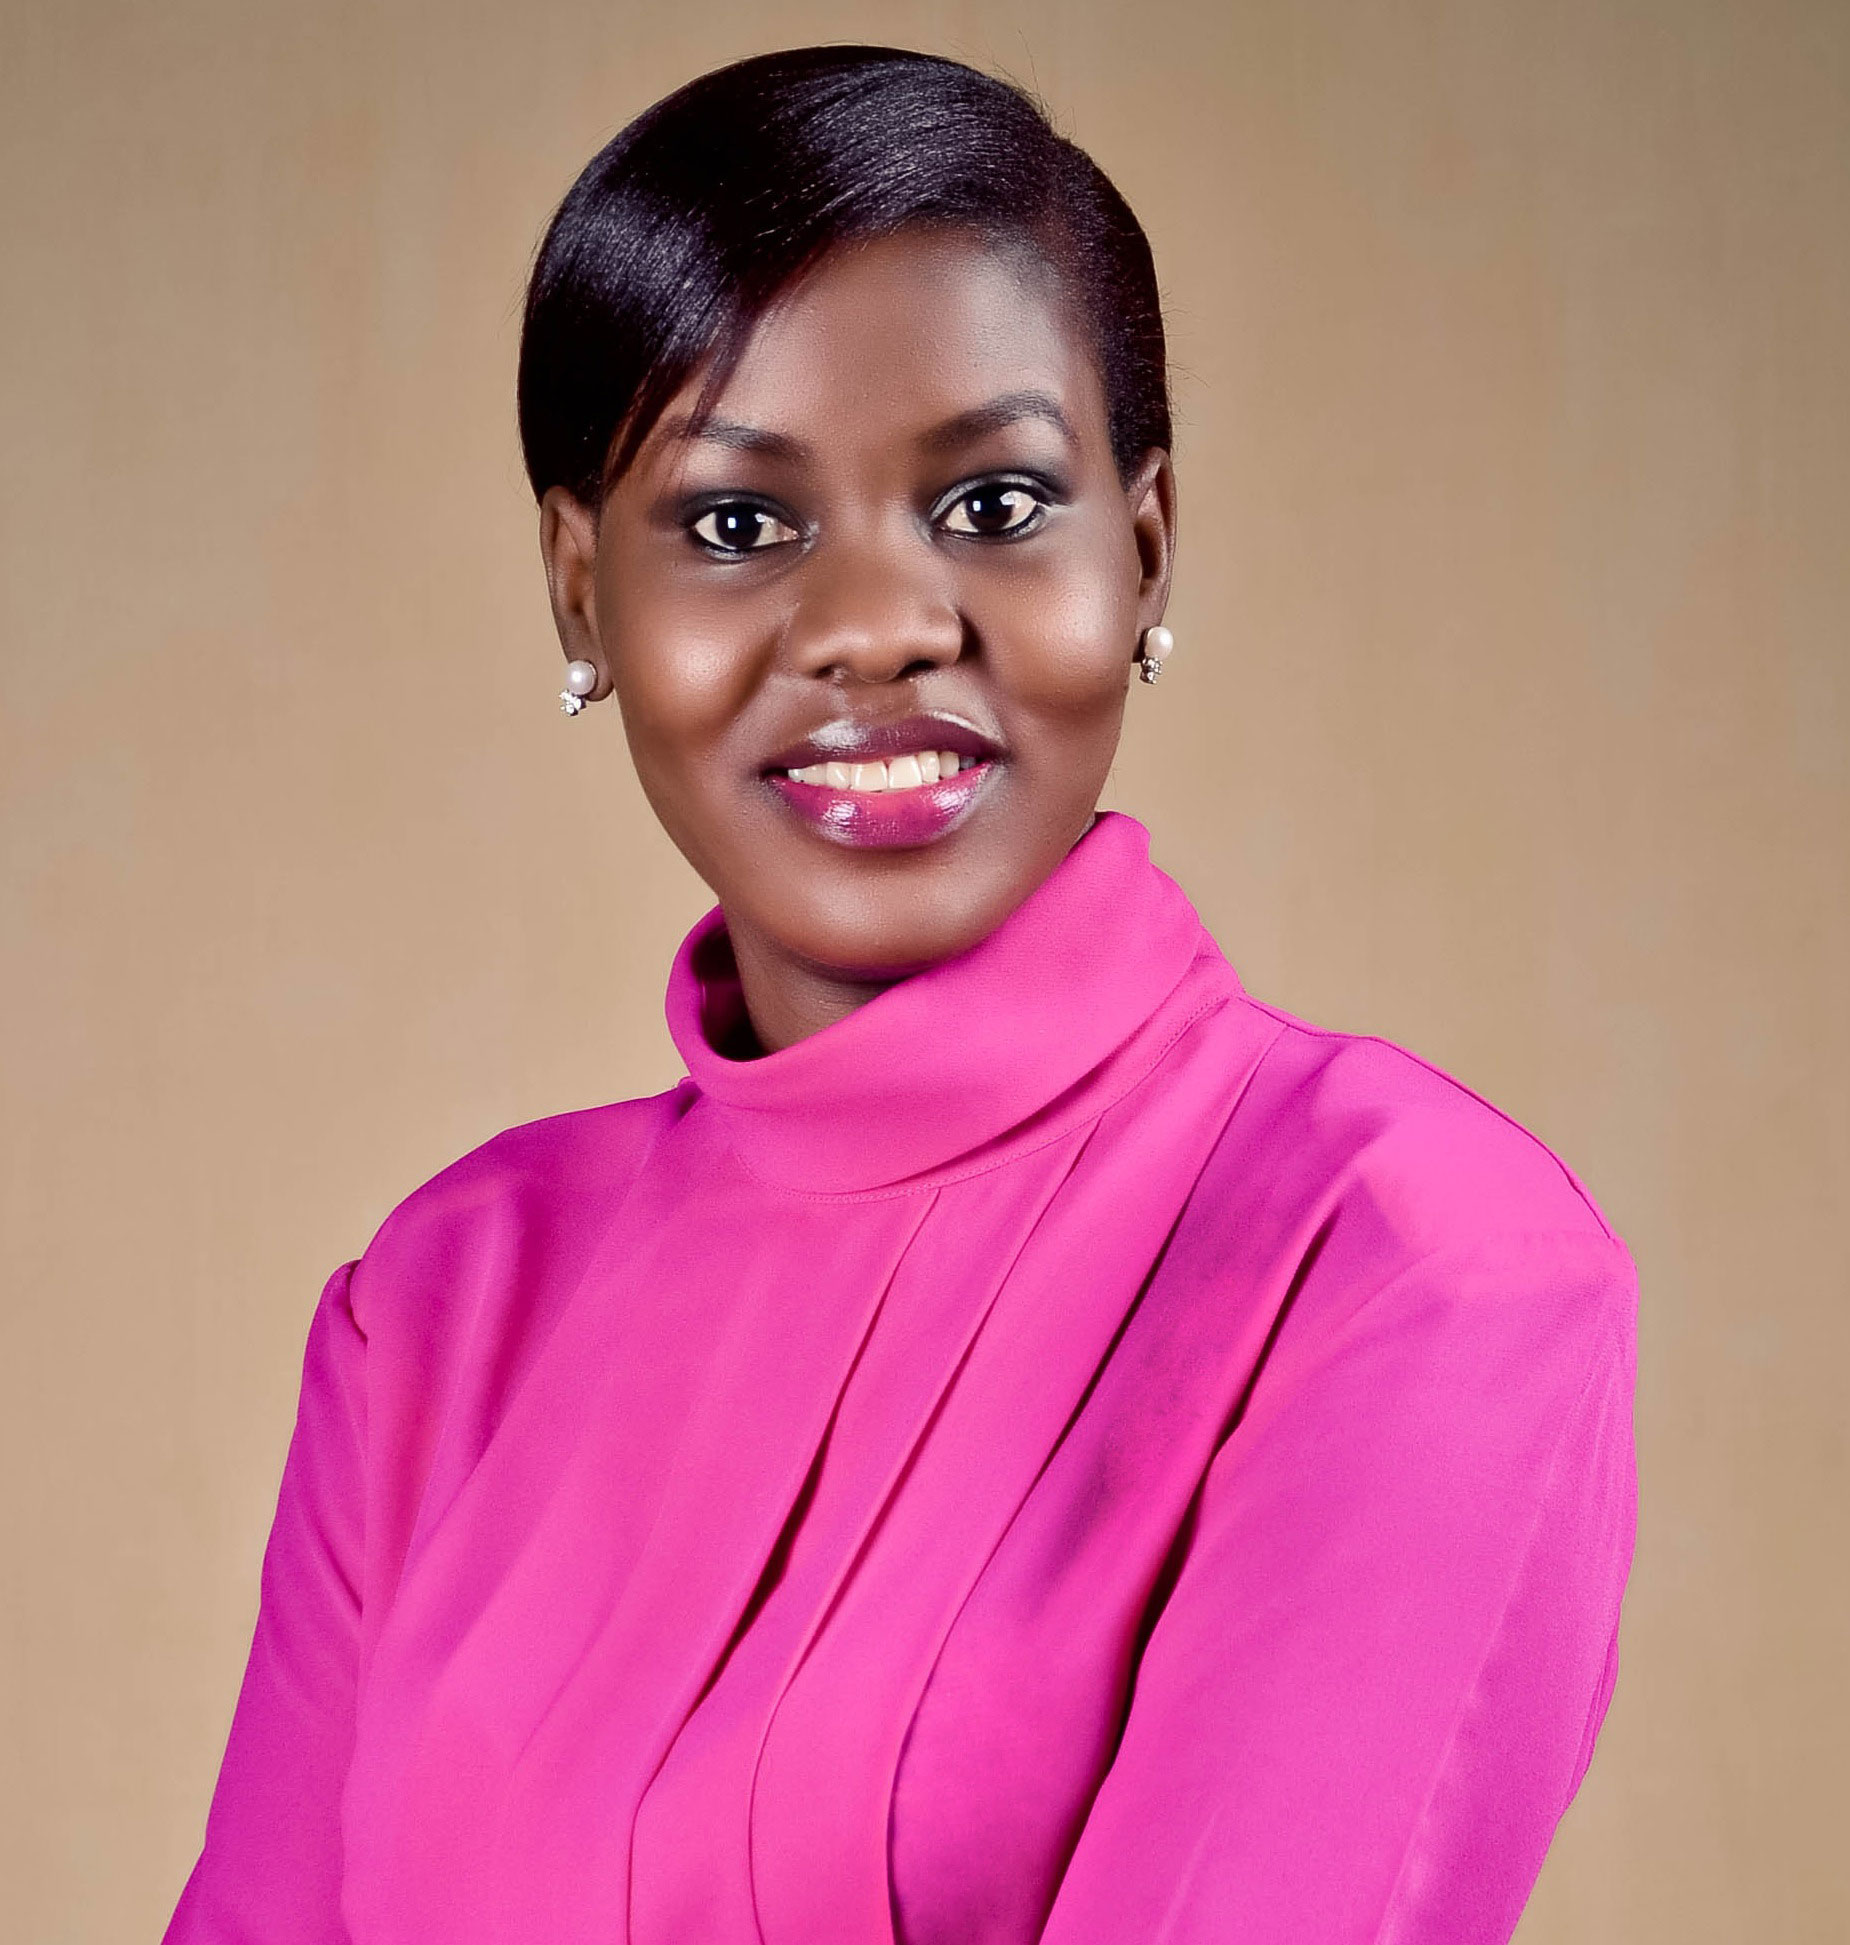 NTV news anchor Faridah Nakazibwe